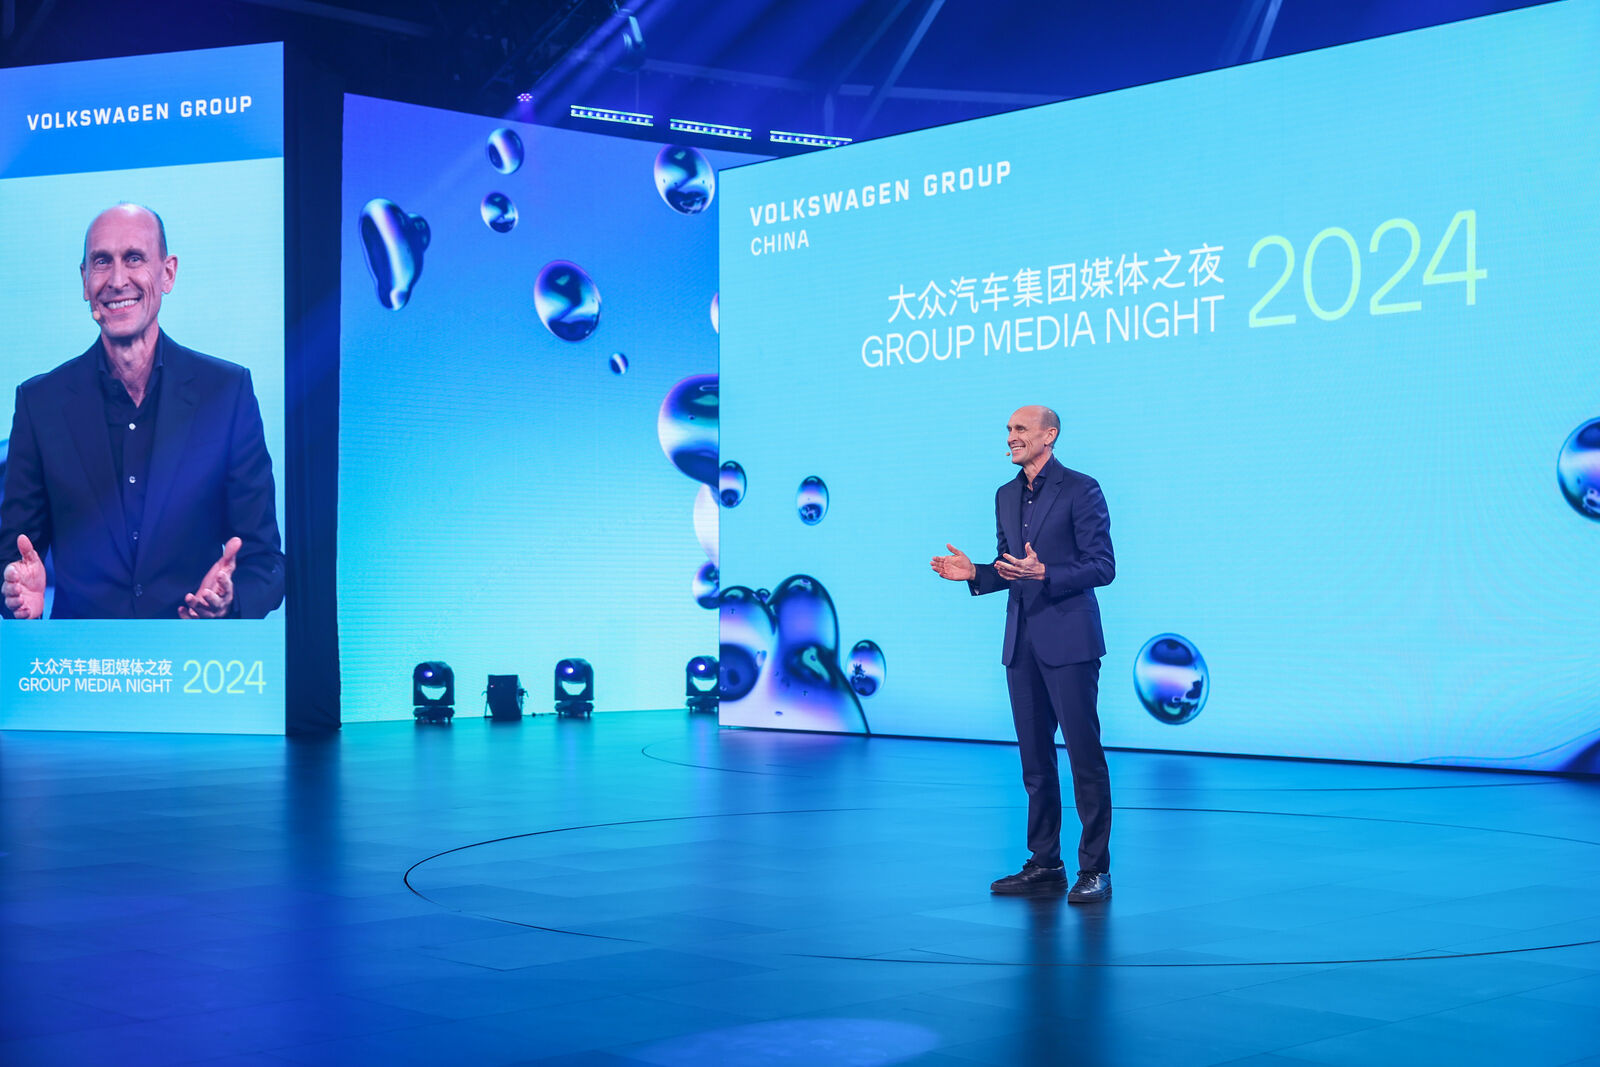 Ein Redner steht auf der Bühne während der Veranstaltung "Group Media Night 2024", und große Bildschirme zeigen den Titel und das Branding der Veranstaltung in Englisch und Chinesisch.